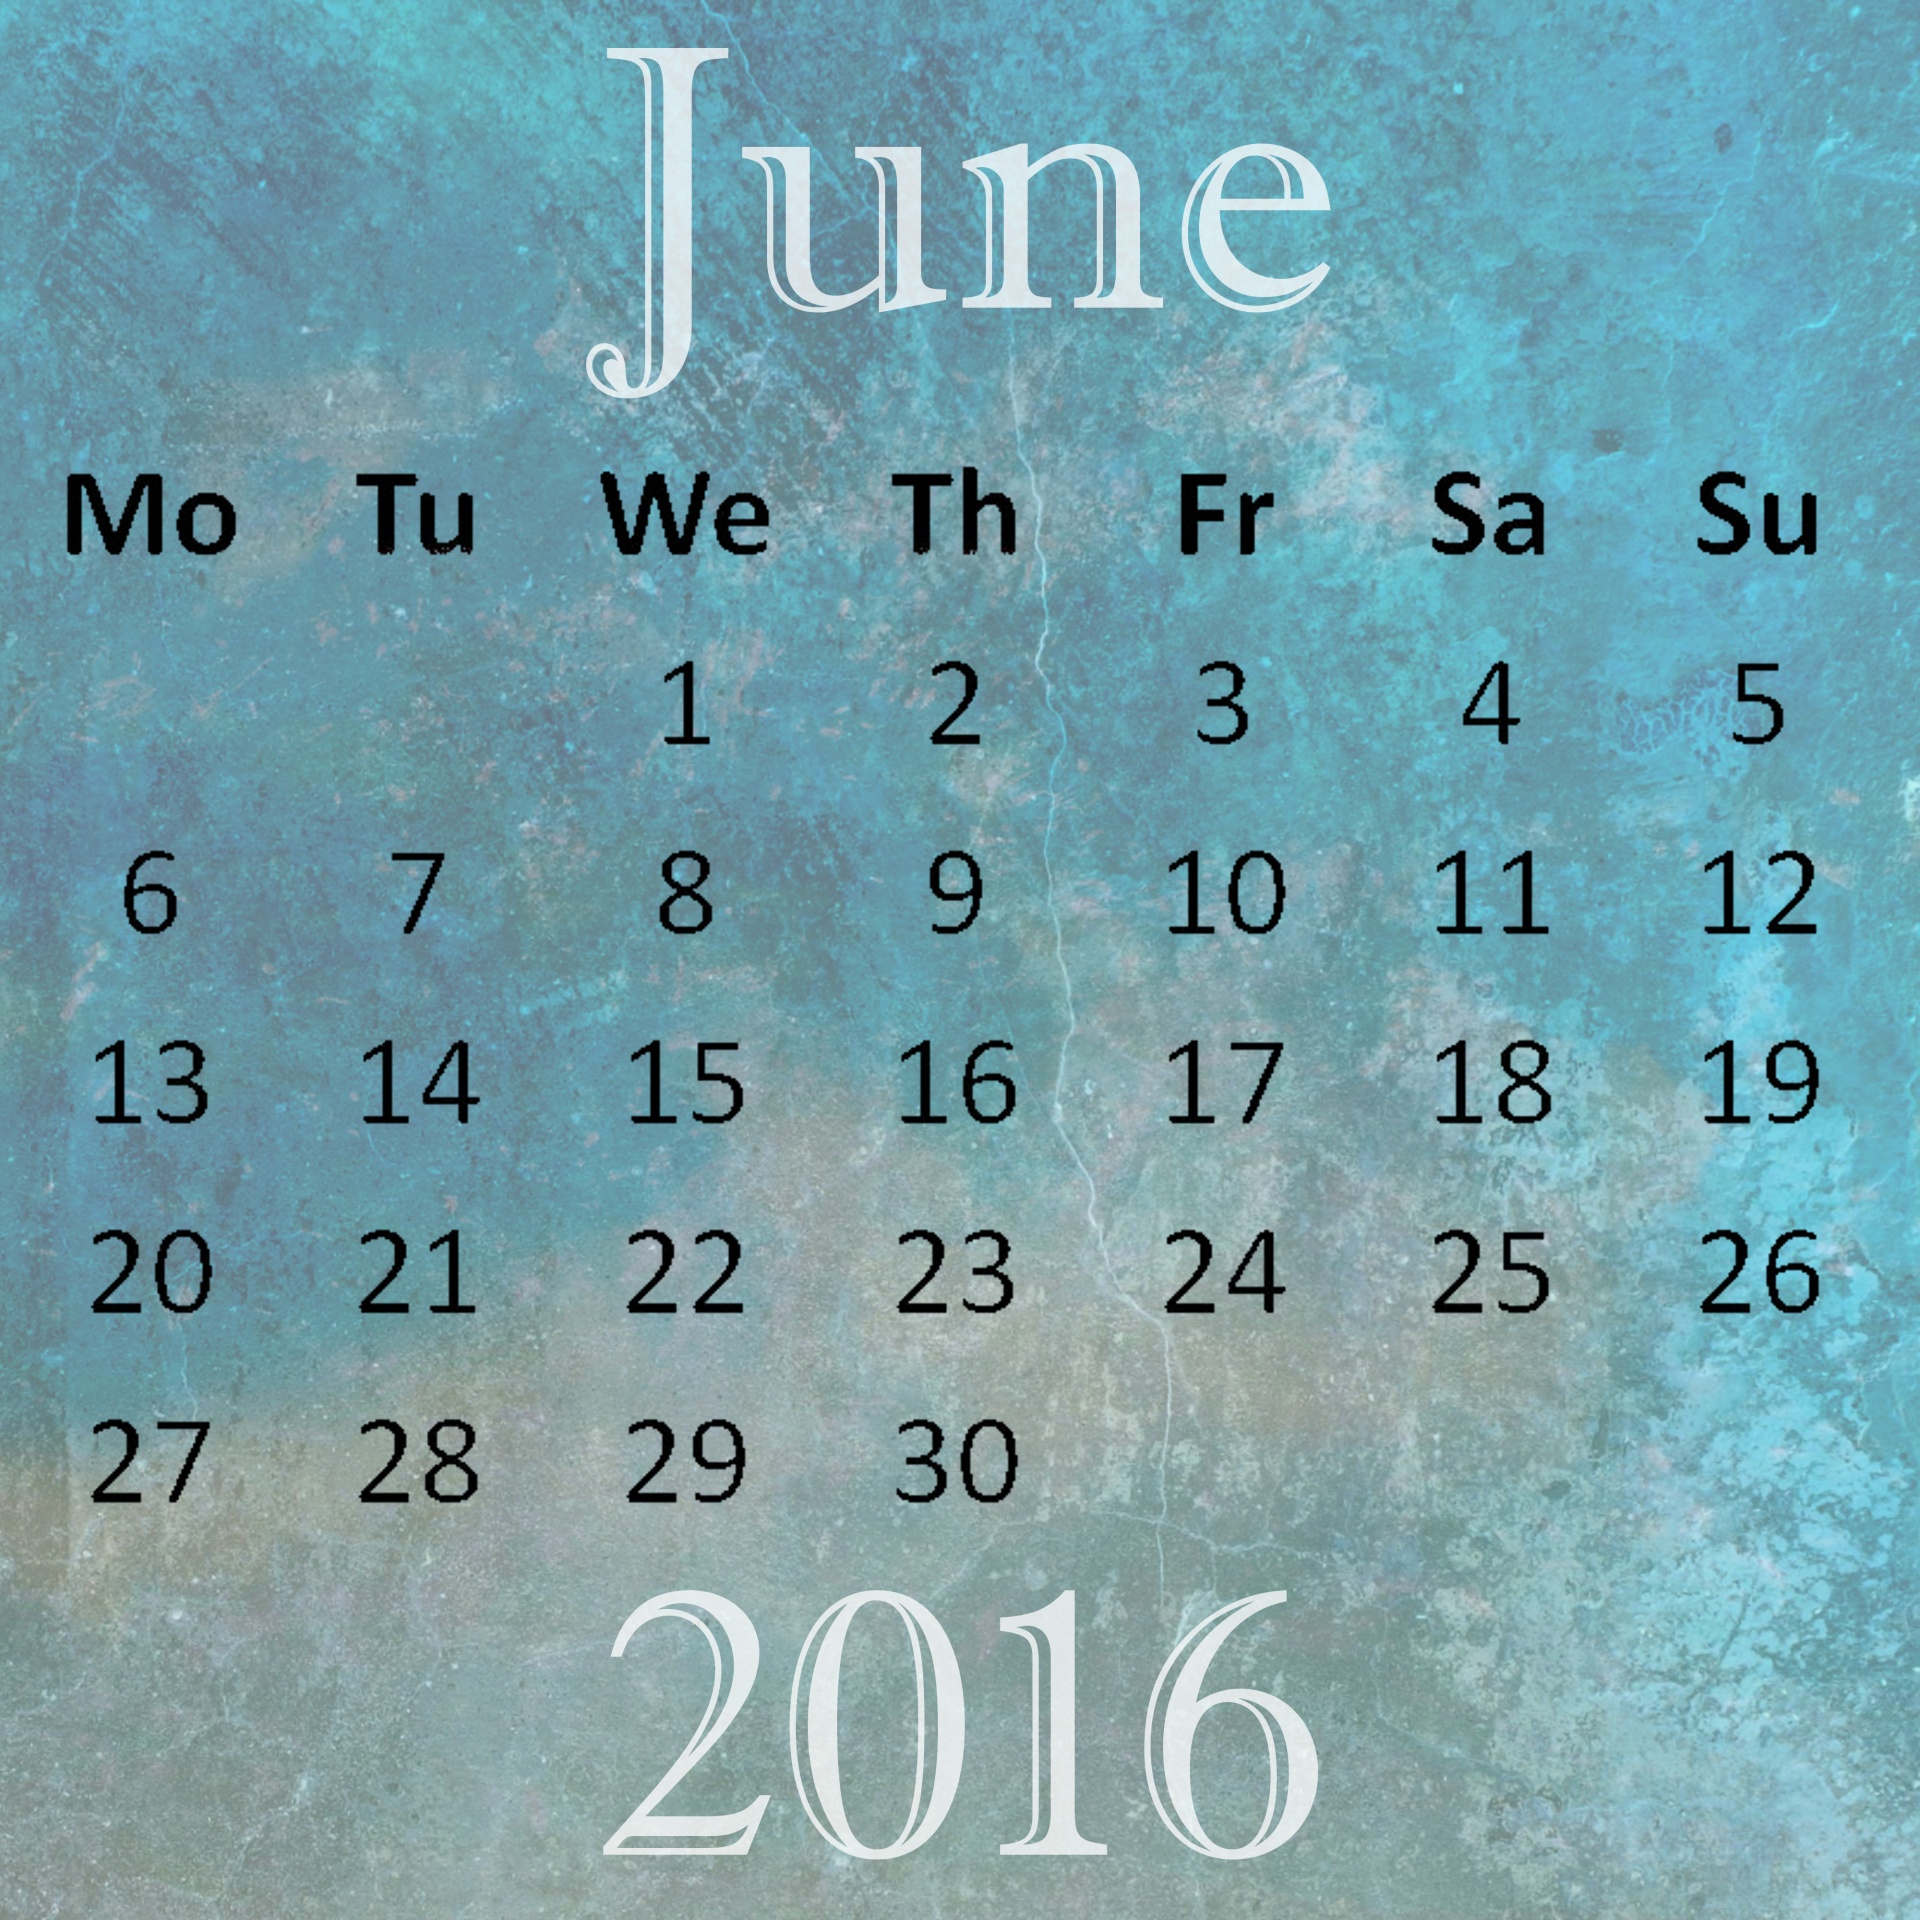 June 2017 Calendars Uk E1494360582512